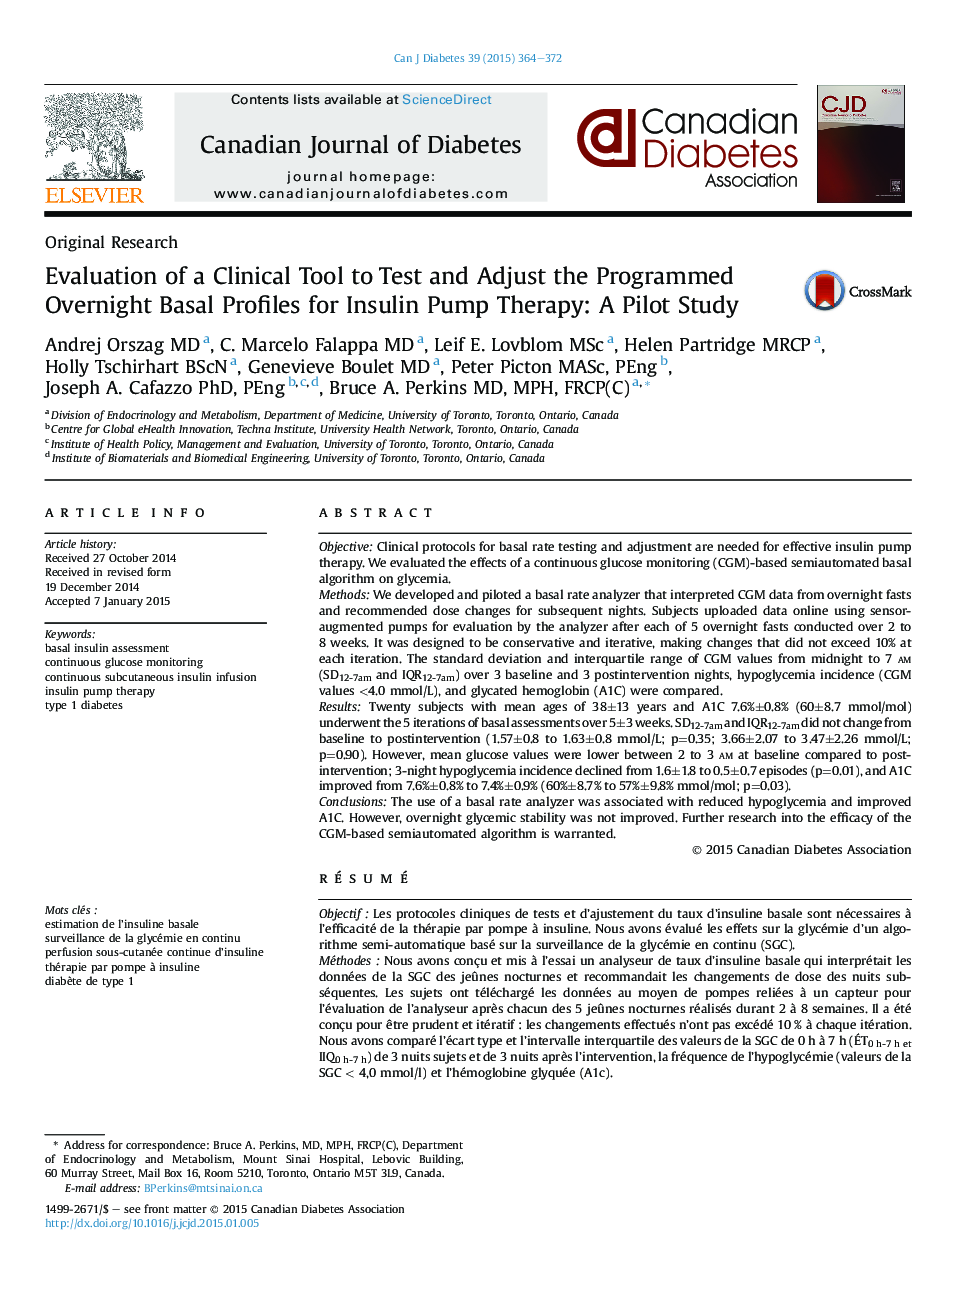 ارزیابی یک ابزار بالینی برای تست و تنظیم پرونده های اساسی شبانه برنامه ریزی شده برای پمپ های انسولین درمانی: یک مطالعه خلبان 